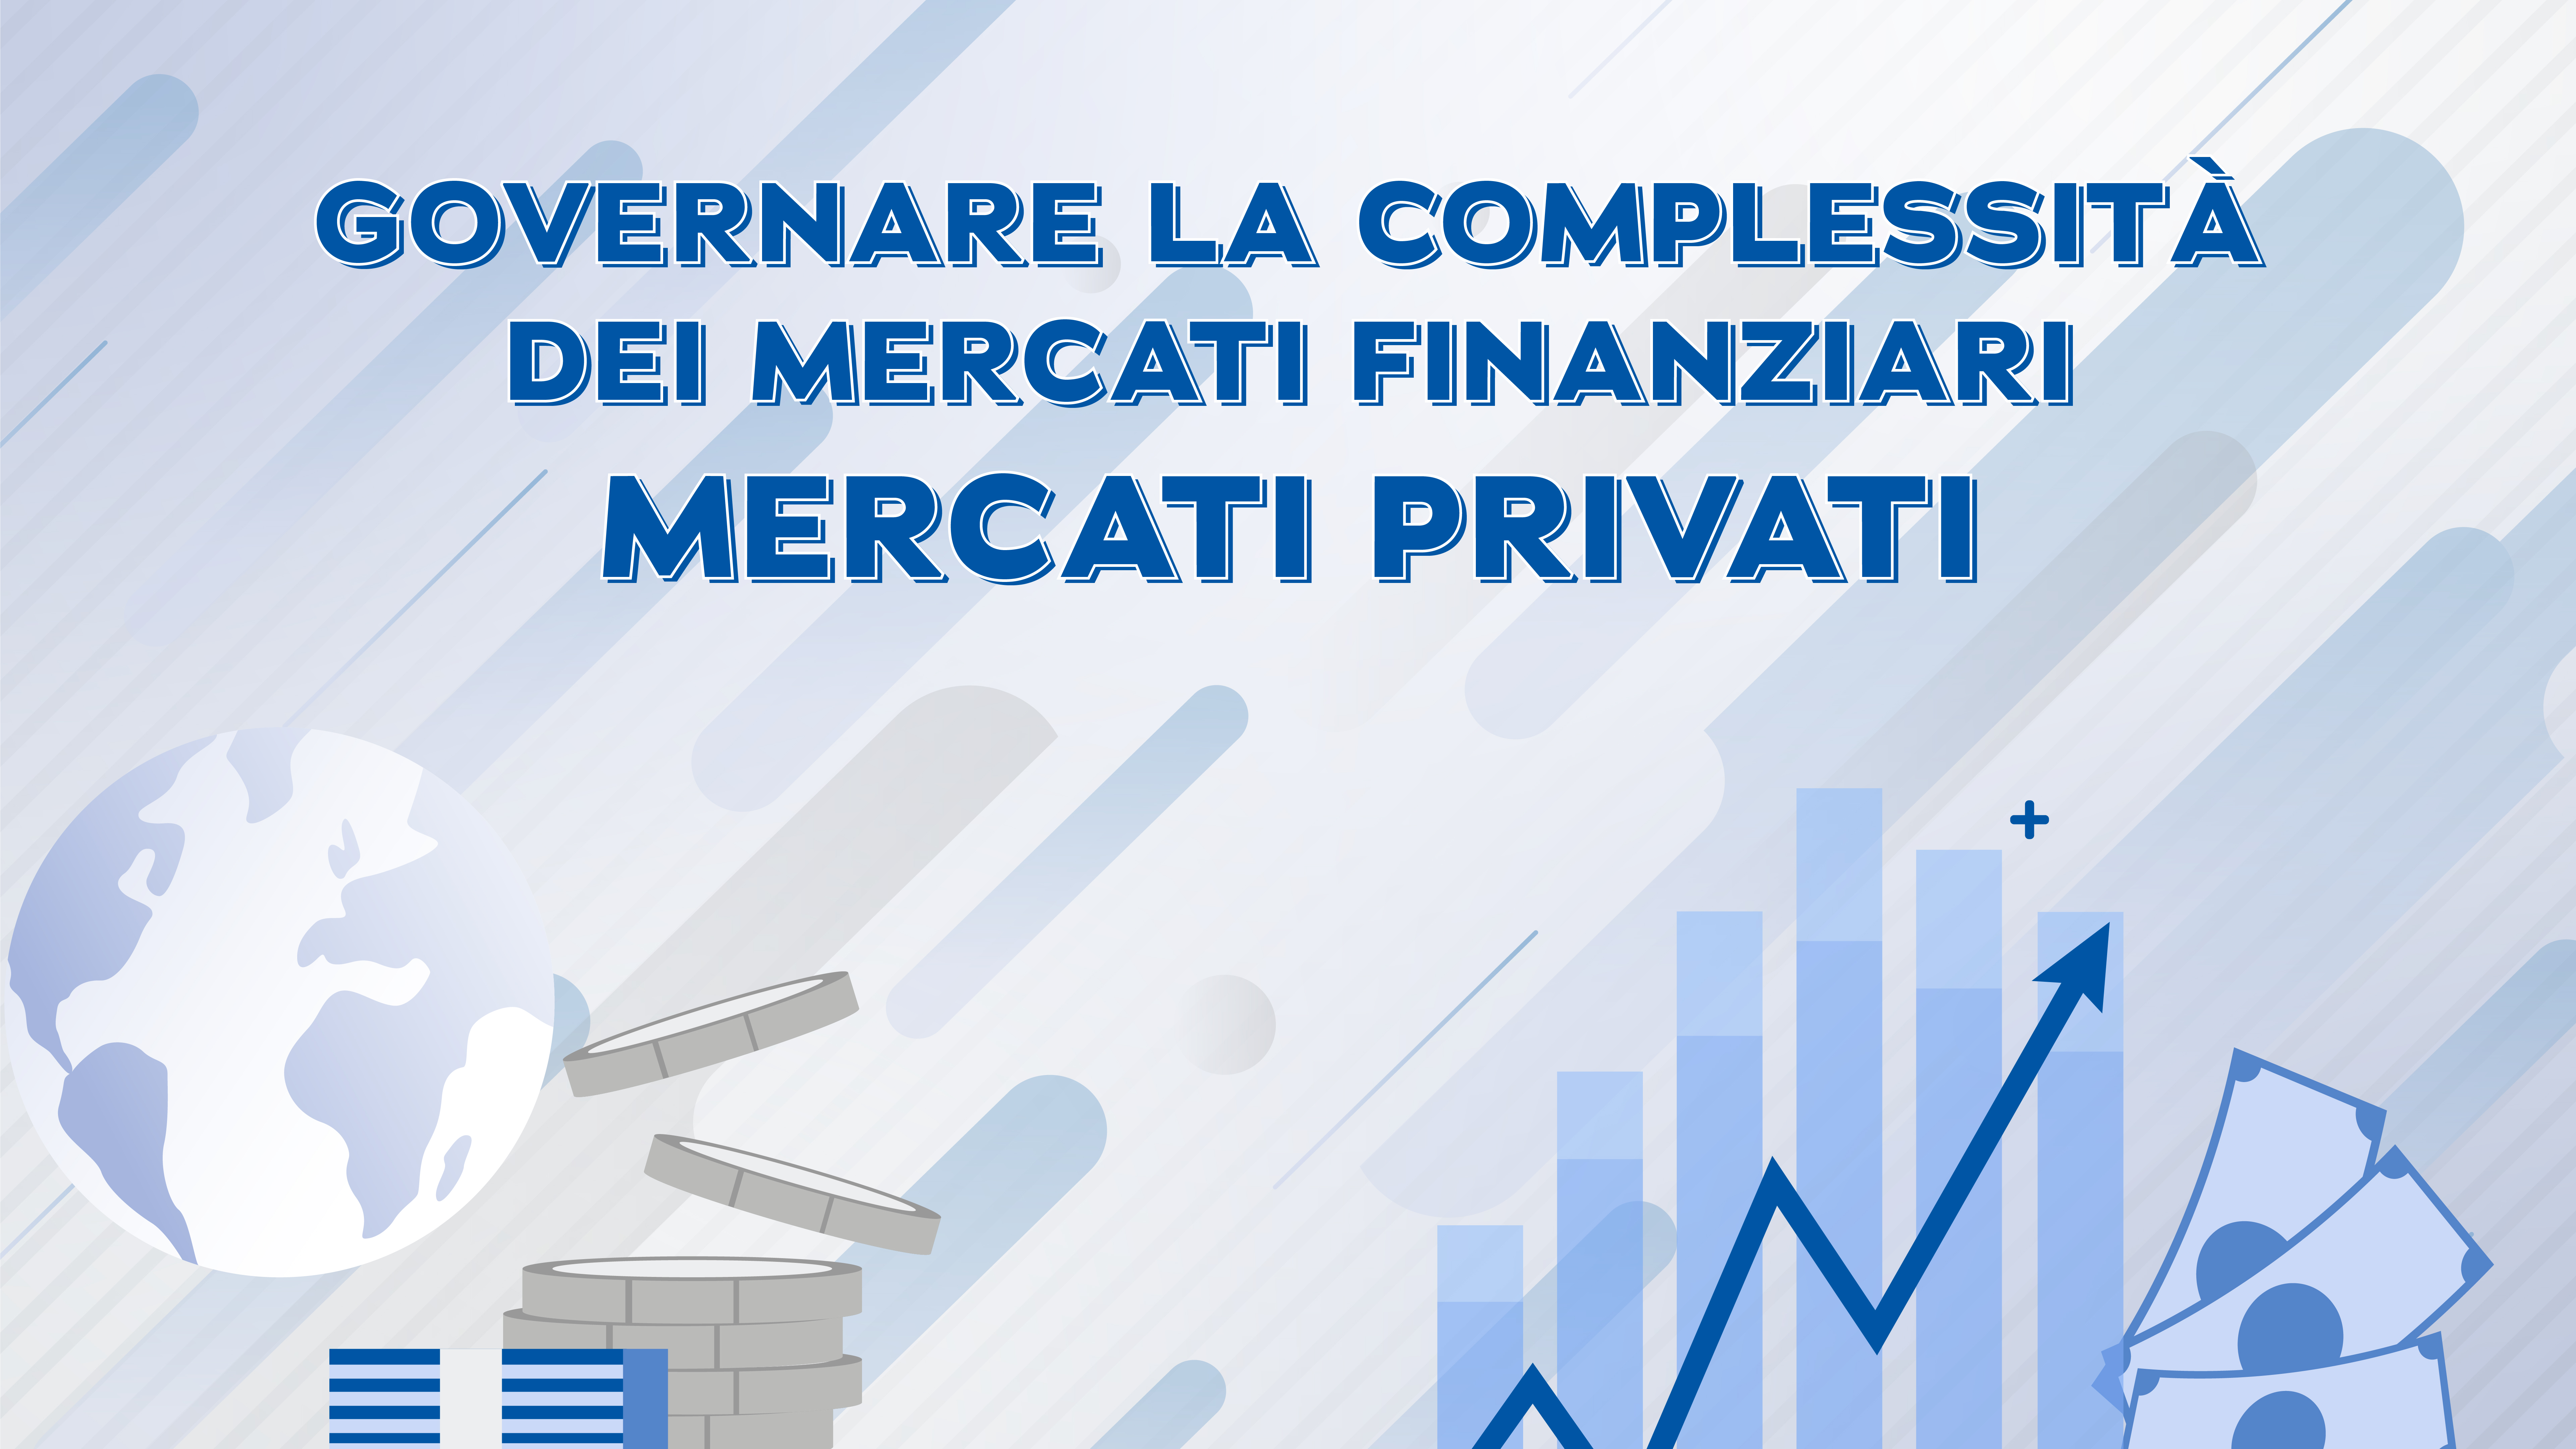 Panel mercati privati - Cocozza, Diacetti, Landi, Liso, Magg